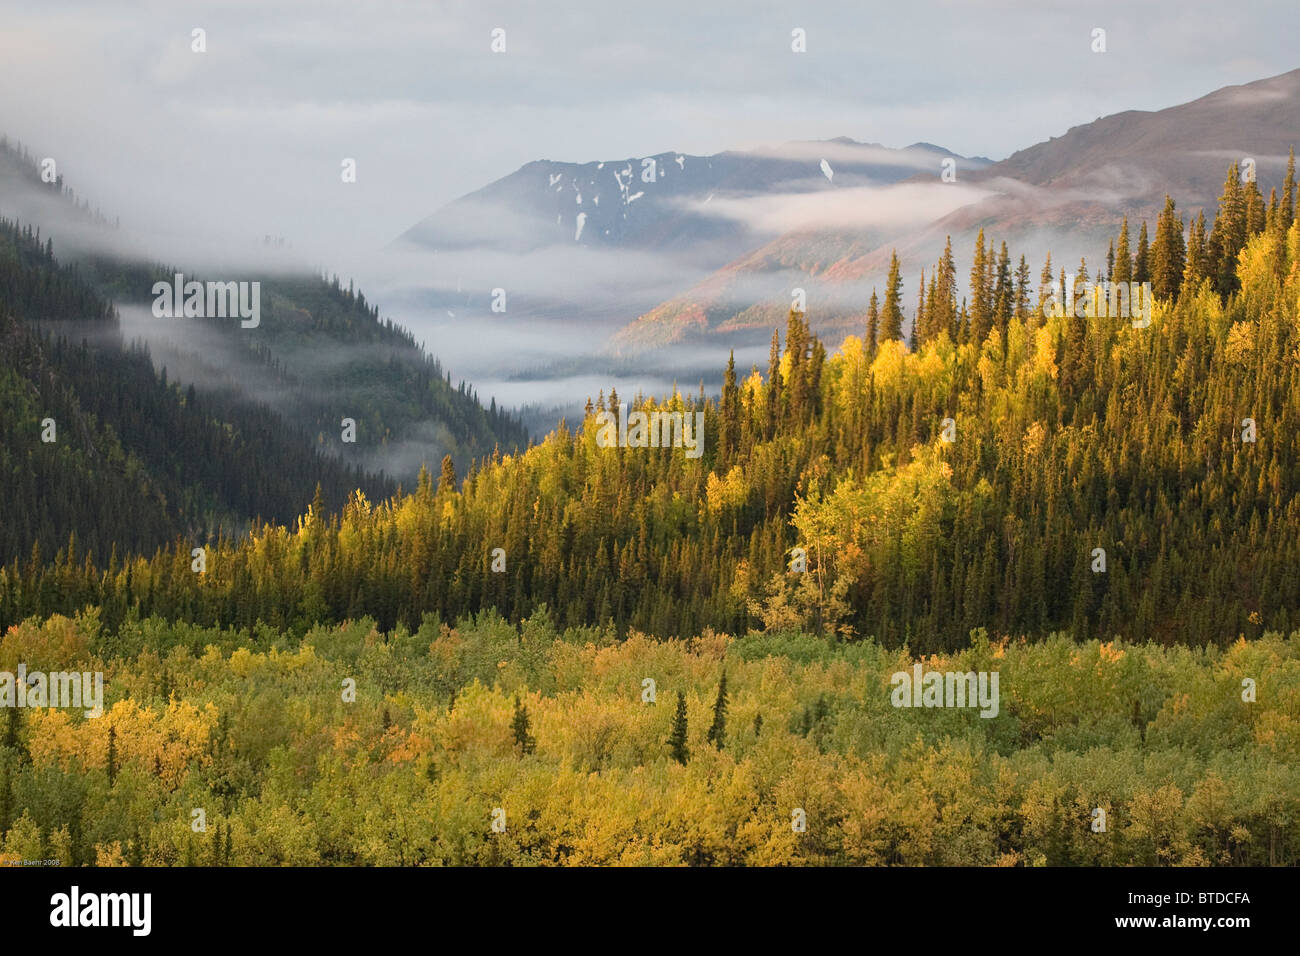 Herbstlicher Blick auf Fichte, Aspen und Birke Bäume wechselnden Farben nahe dem Eingang zum Denali Nationalpark, Alaska Interior, Herbst Stockfoto